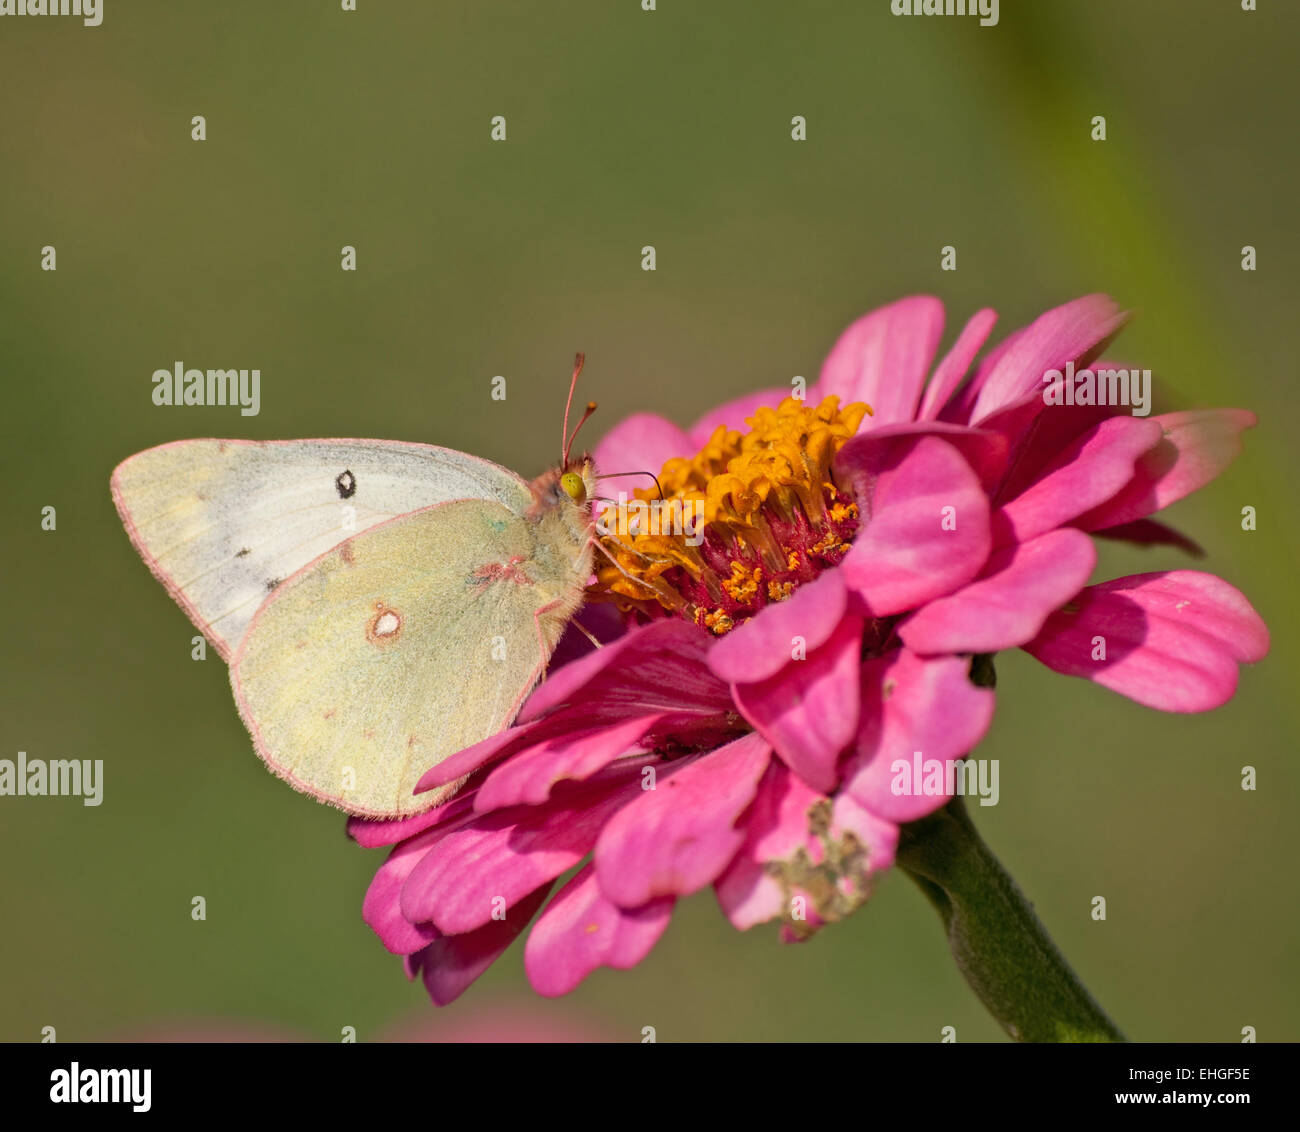 Azufre nublado alimentándose de una mariposa rosa Zinnia contra fondo verde Foto de stock